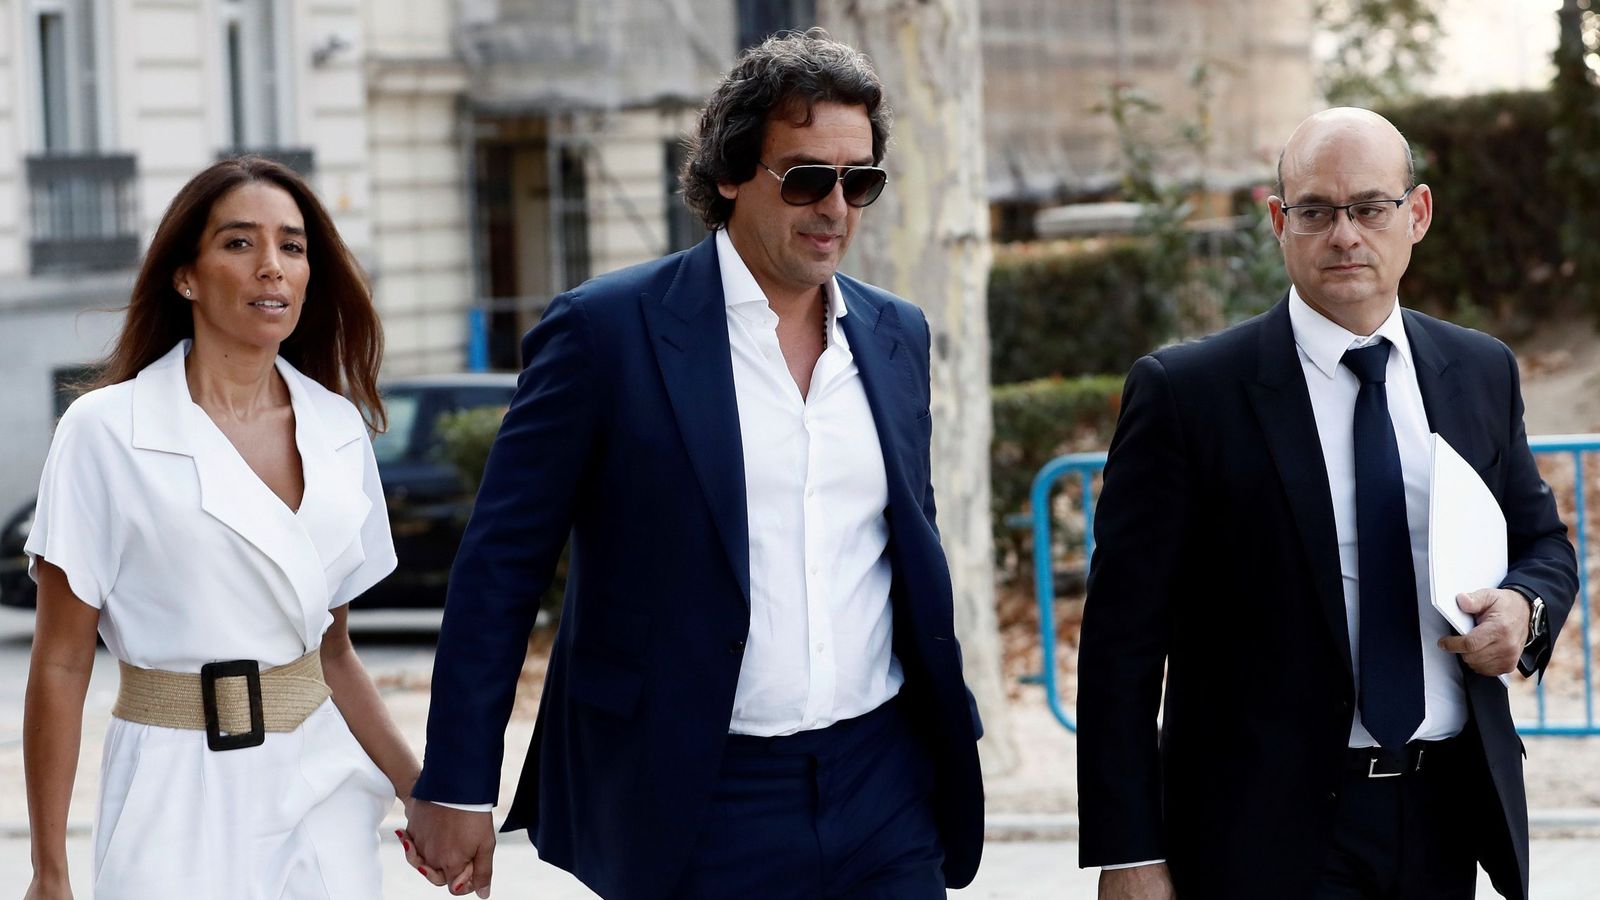 Juanma López y su pareja, Rocío del Carmen Sánchez, acompañados de su abogado antes de entrar en la Audiencia Nacional. (EFE)